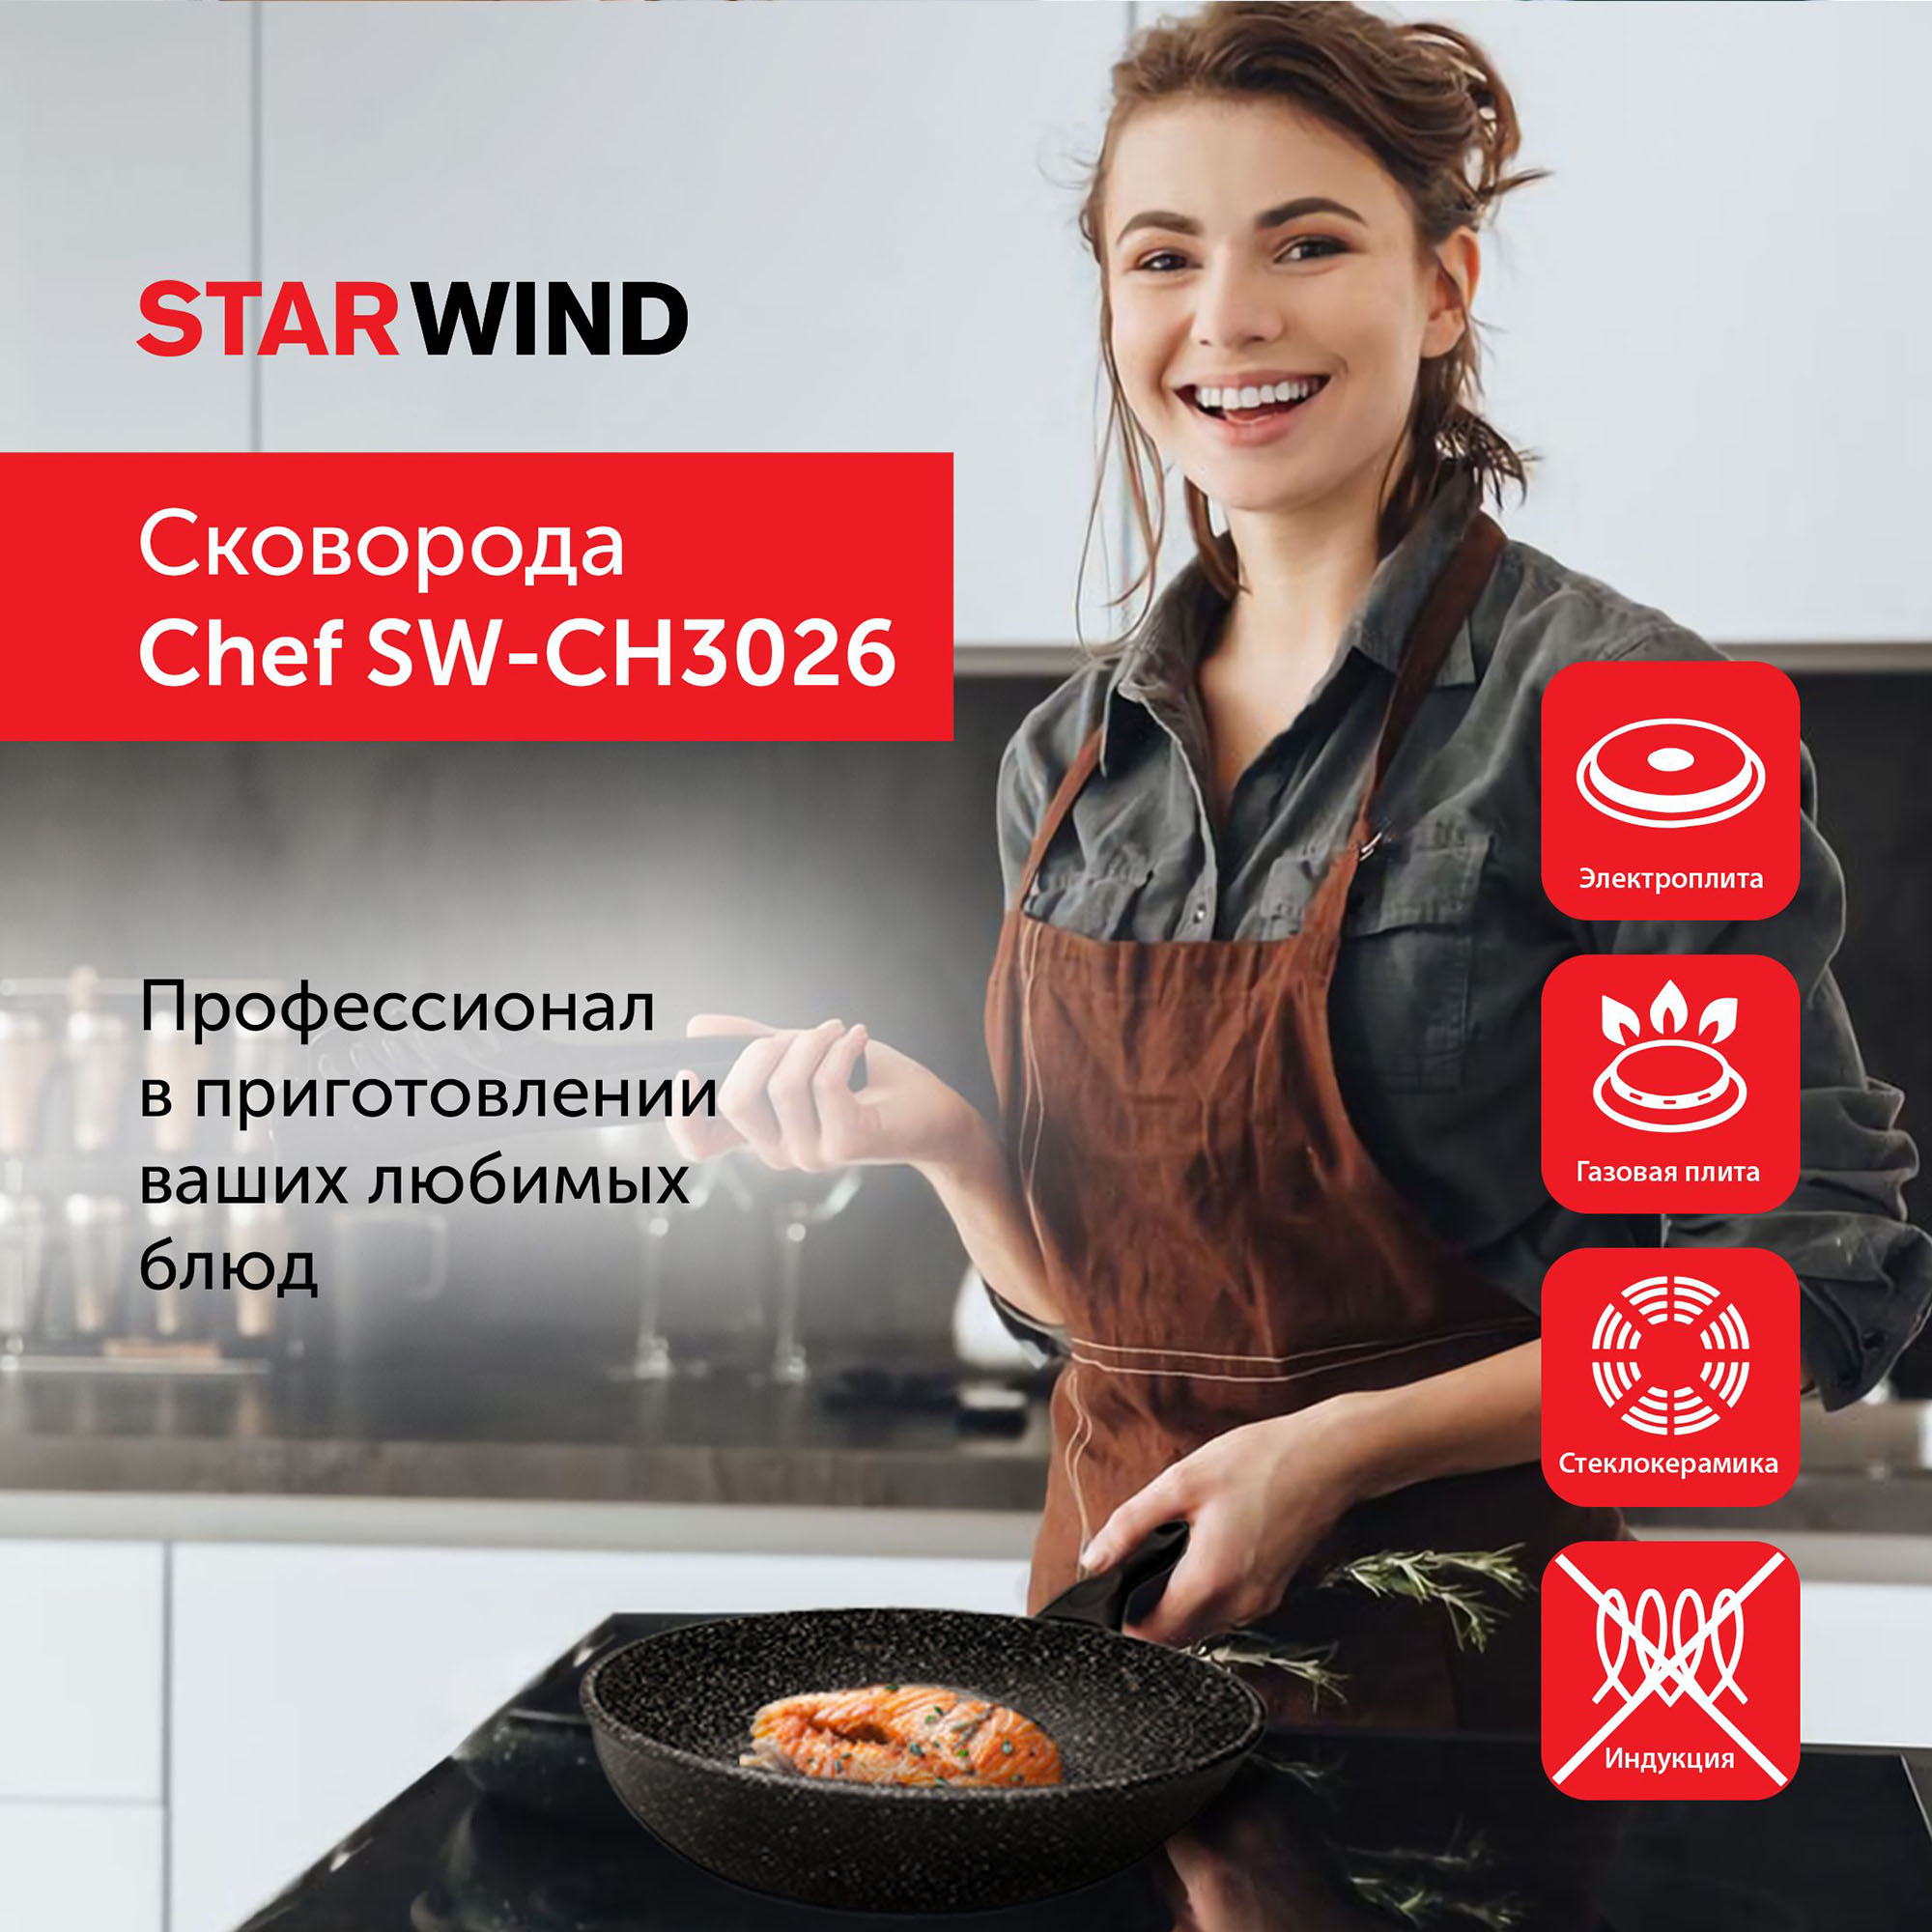 Сковорода Starwind Chef SW-CH3026 круглая 26см покрытие: Quantum2 ручка несъемная (без крышки) черный (SW-CH3026/КОР)